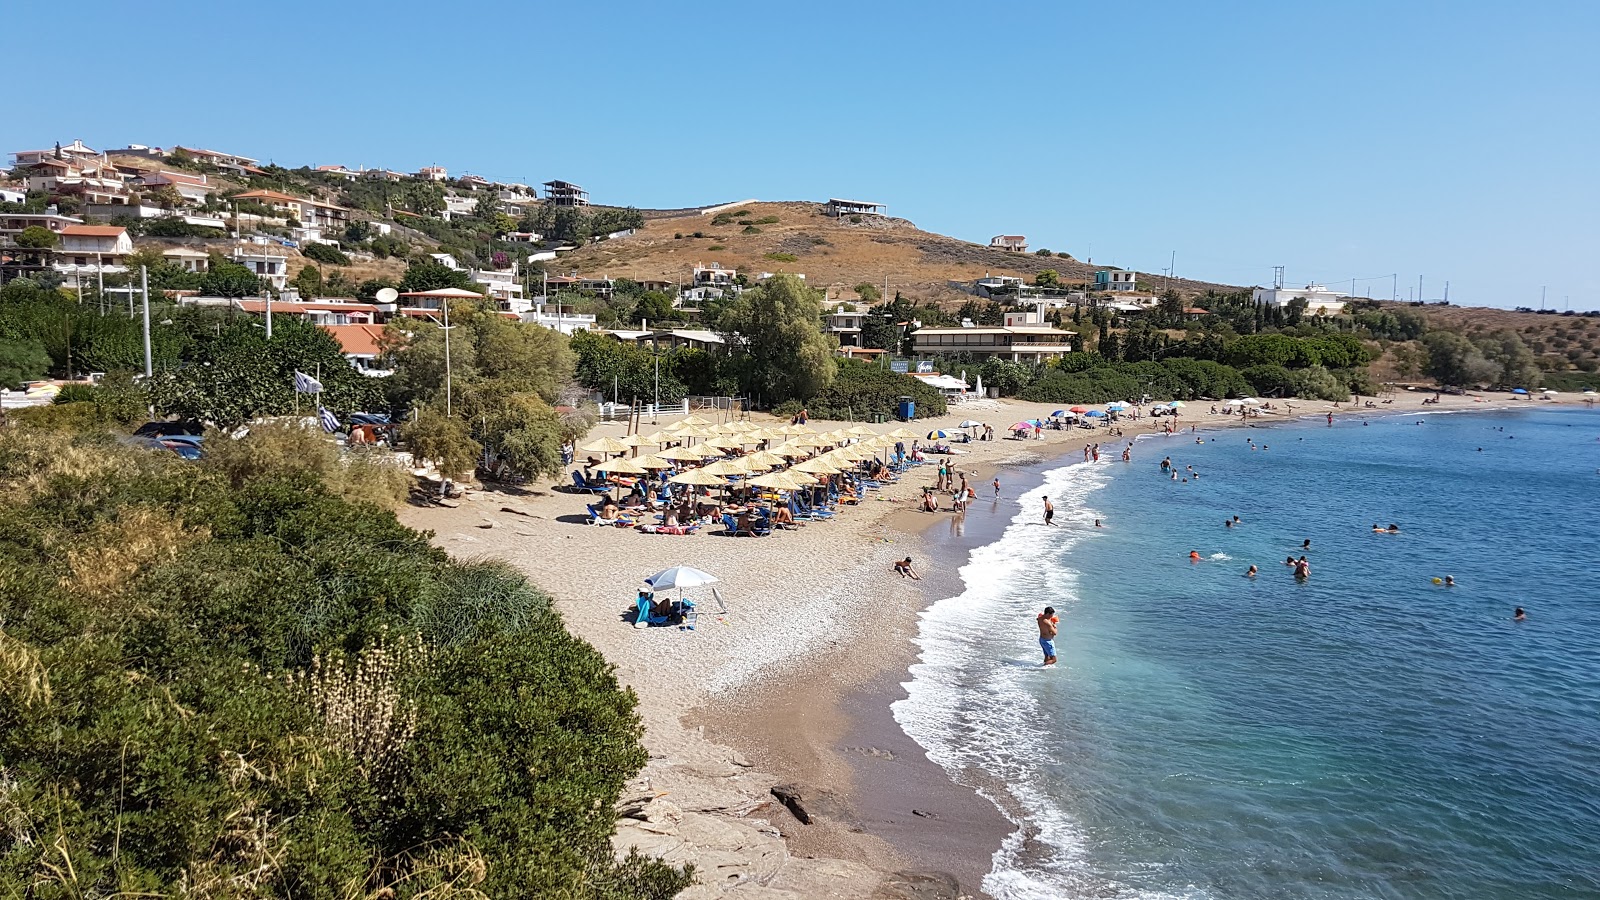 Vromopousi beach'in fotoğrafı parlak kum yüzey ile